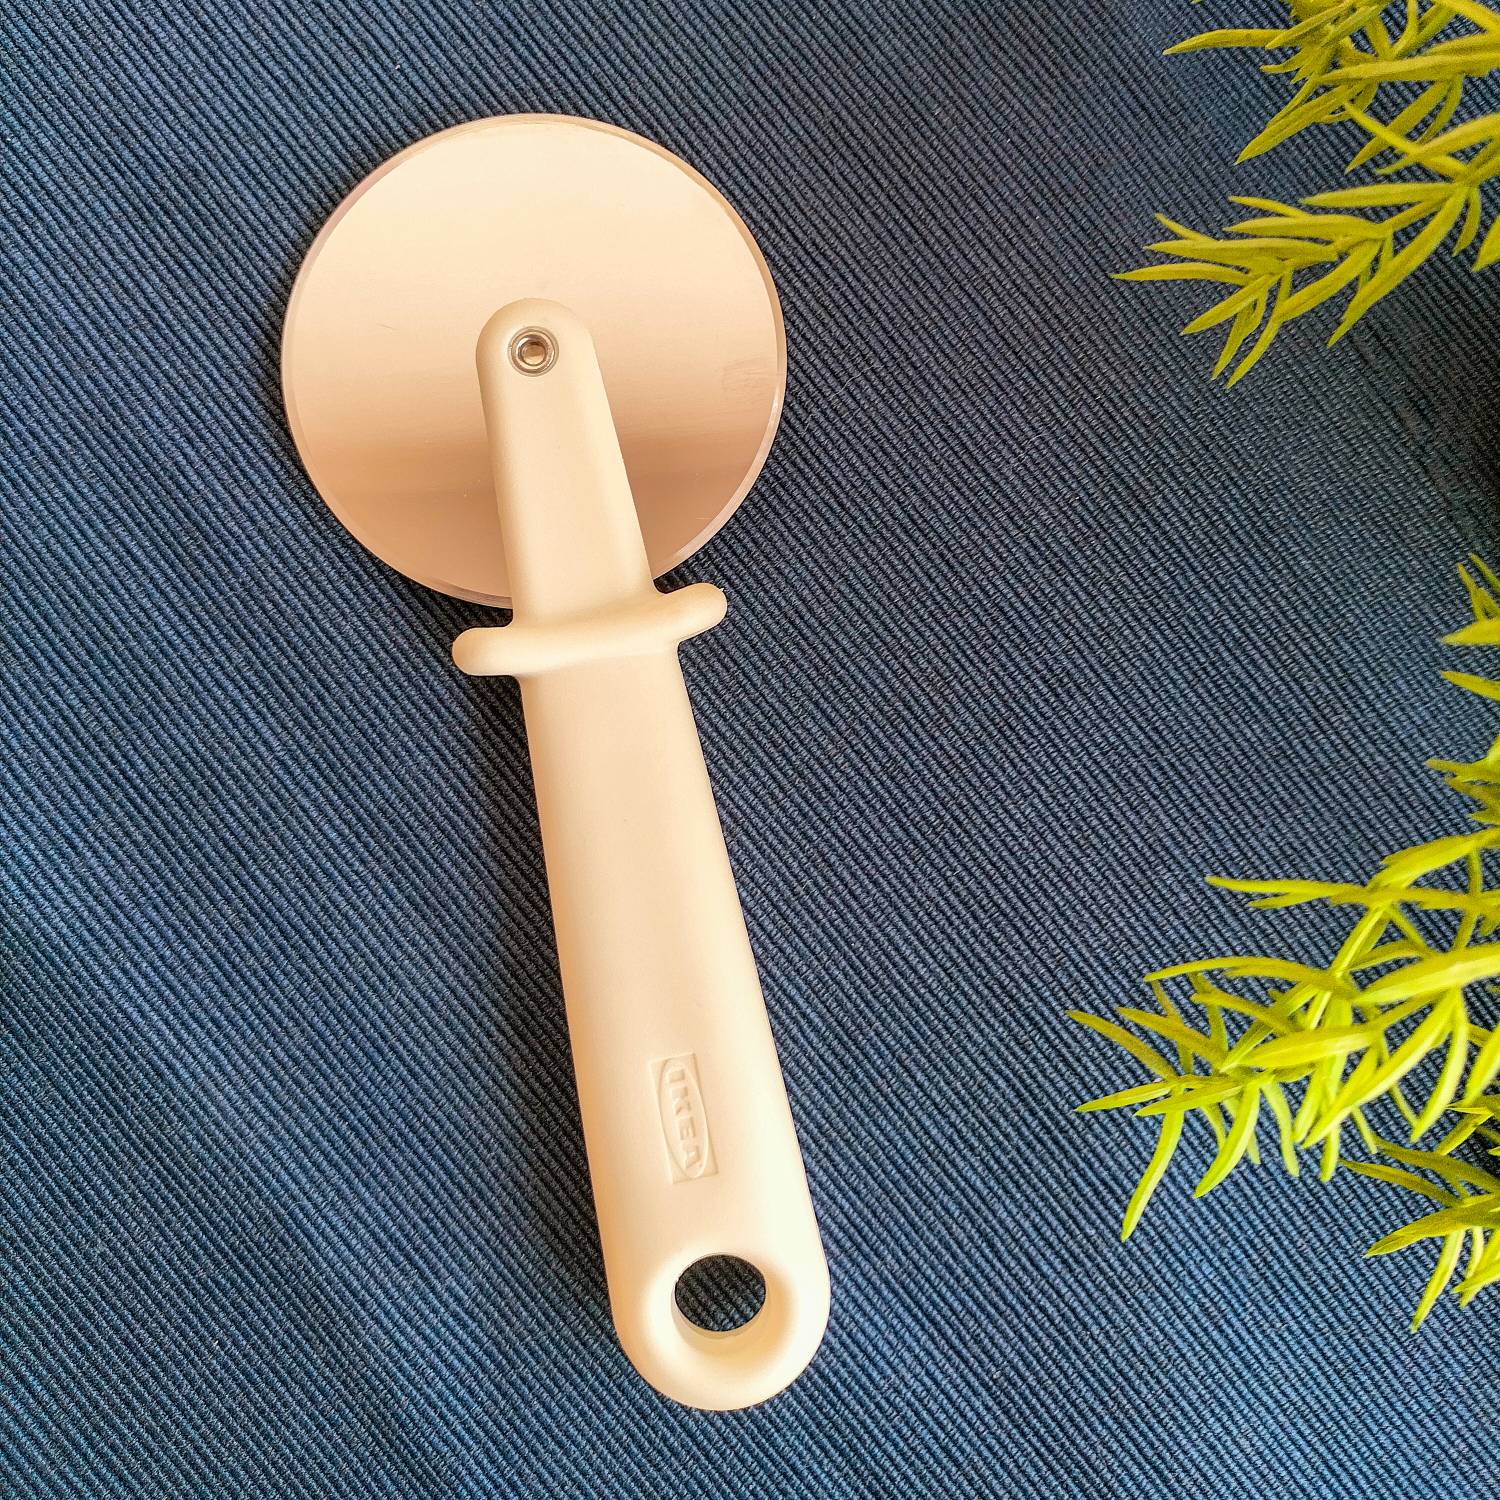 UPPFYLLD Potato peeler, green - IKEA